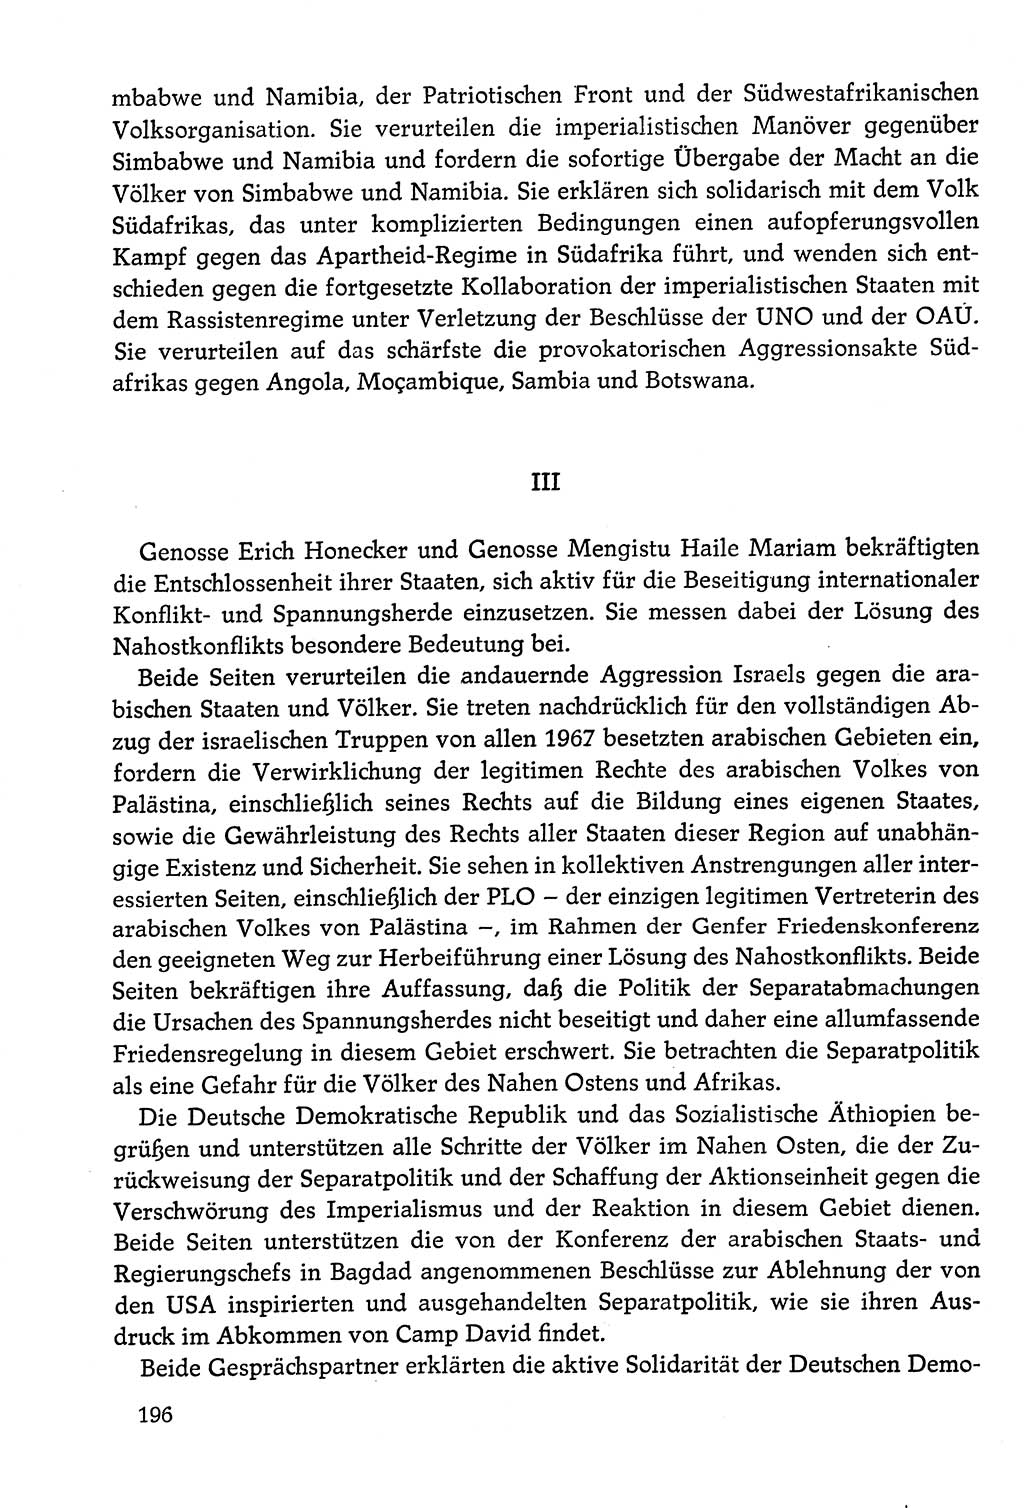 Dokumente der Sozialistischen Einheitspartei Deutschlands (SED) [Deutsche Demokratische Republik (DDR)] 1978-1979, Seite 196 (Dok. SED DDR 1978-1979, S. 196)